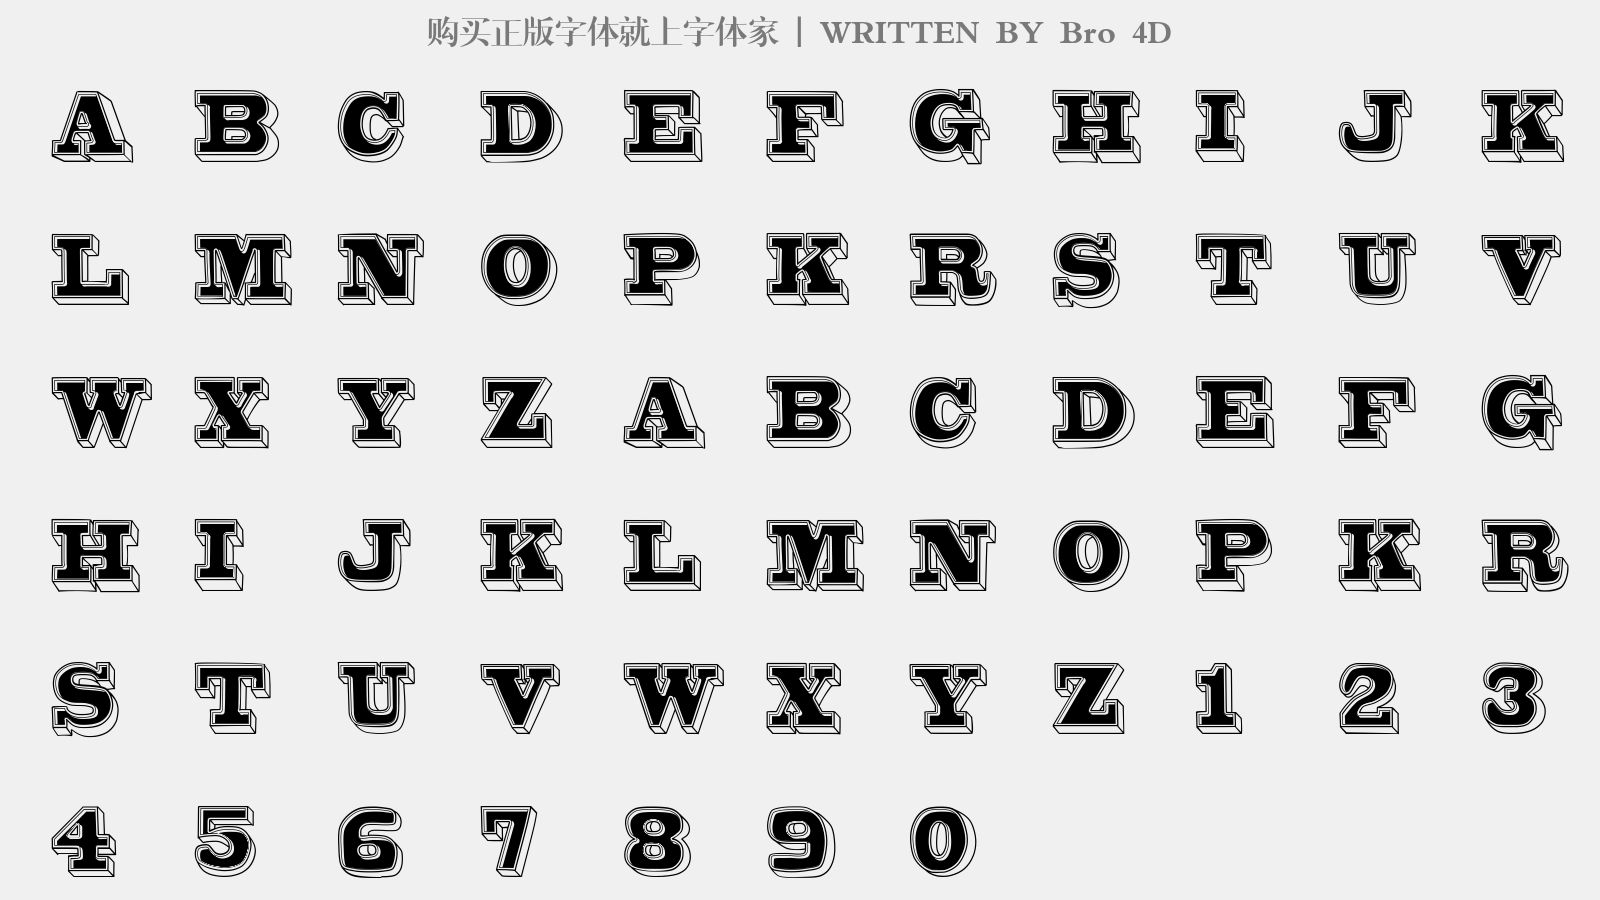 Bro 4D - 大写字母/小写字母/数字